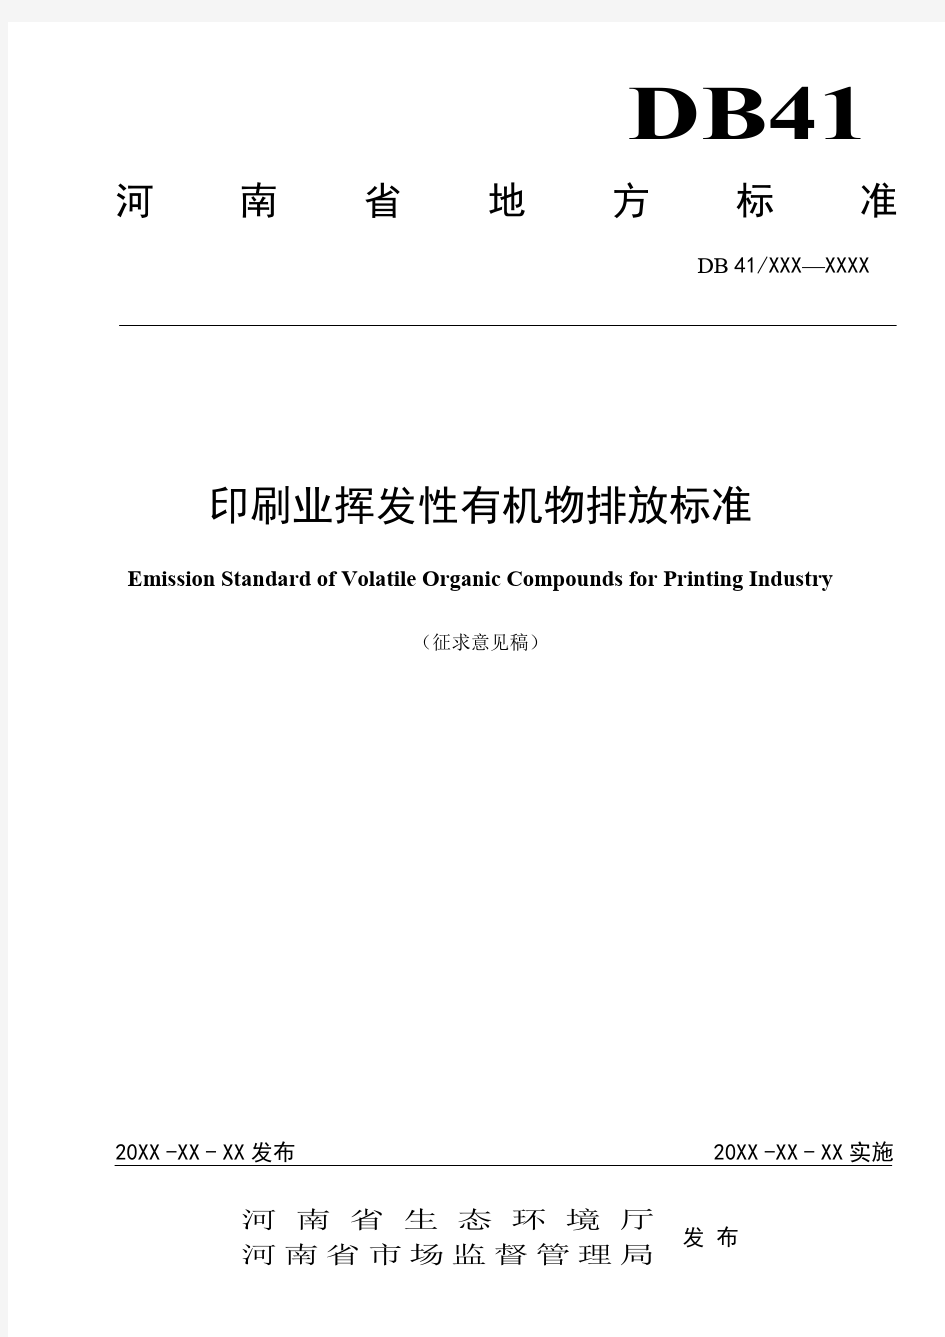 河南省地方标准《印刷业挥发性有机物排放标准》(征求意见稿)